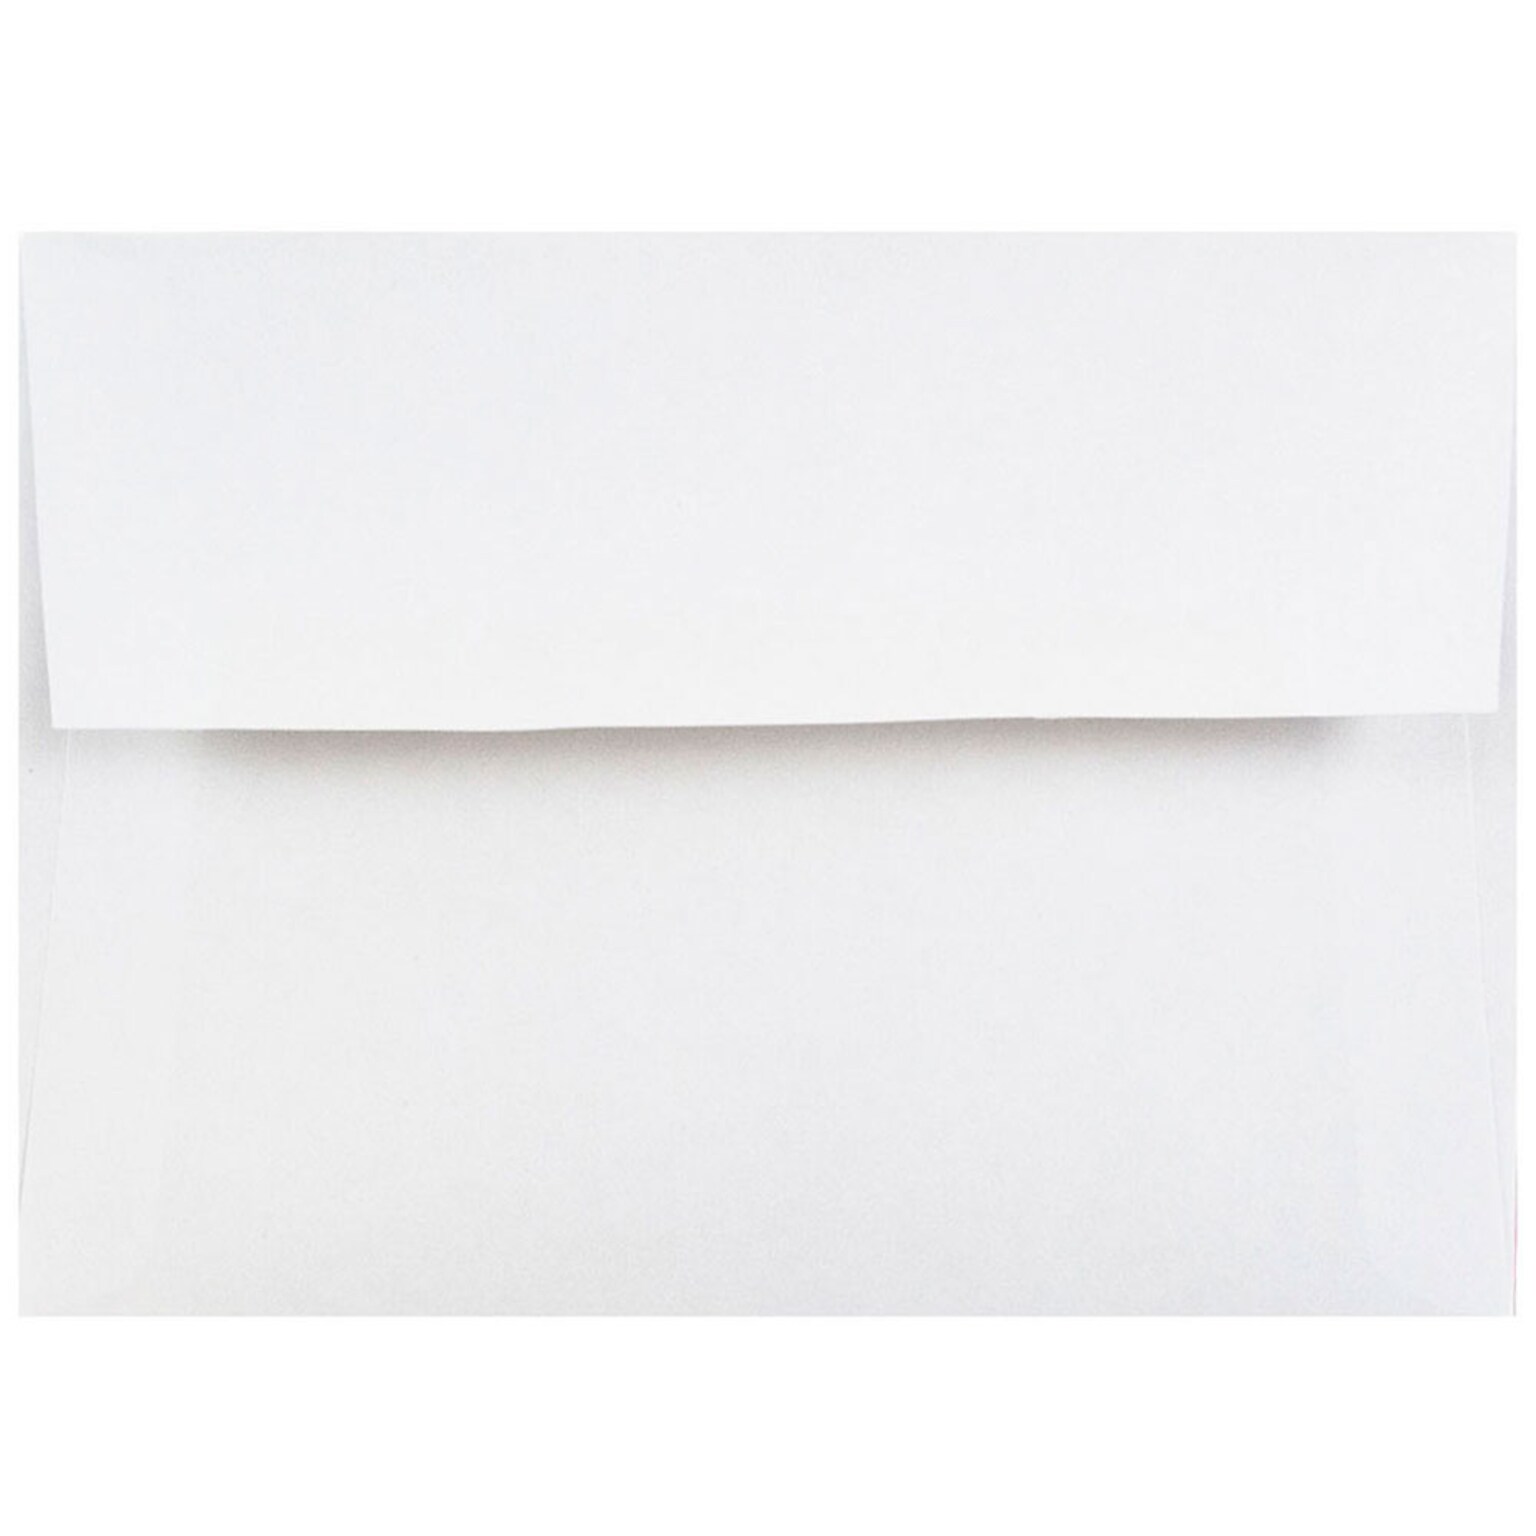 JAM Paper Gummed A2 Invitation Envelopes, 5 3/4 x 4 3/8, White, 100/Pack (MOOP6250LDIC)